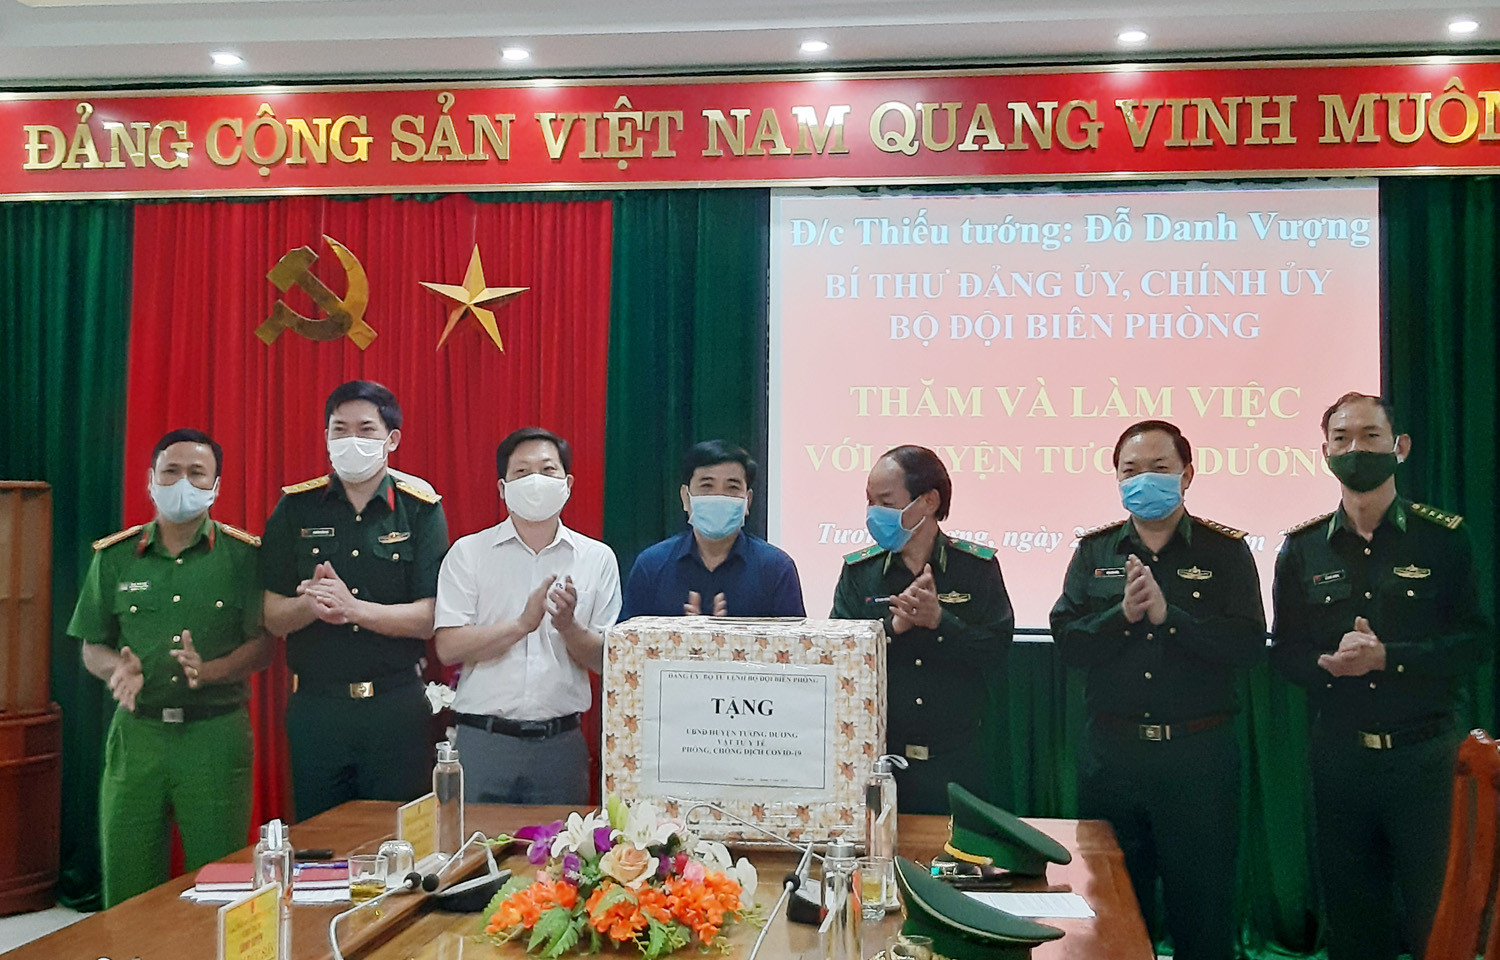 Thiếu tướng Đỗ Danh Vượng và Đại tá Lê Như Cương tặng quà cho huyện Tương Dương.